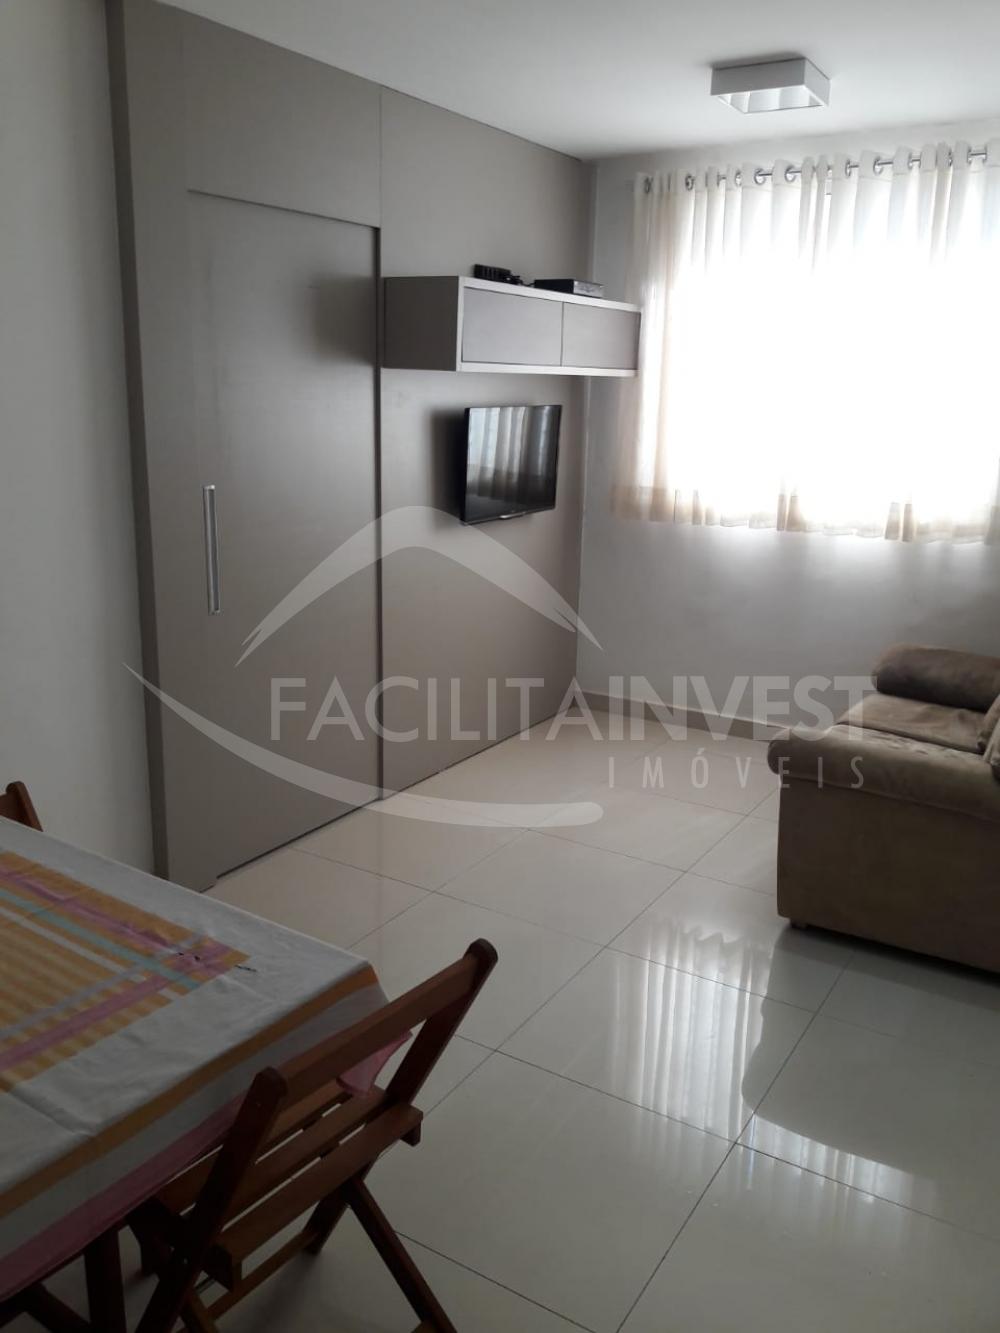 Alugar Apartamentos / Apartamento Mobiliado em Ribeirão Preto R$ 1.100,00 - Foto 1